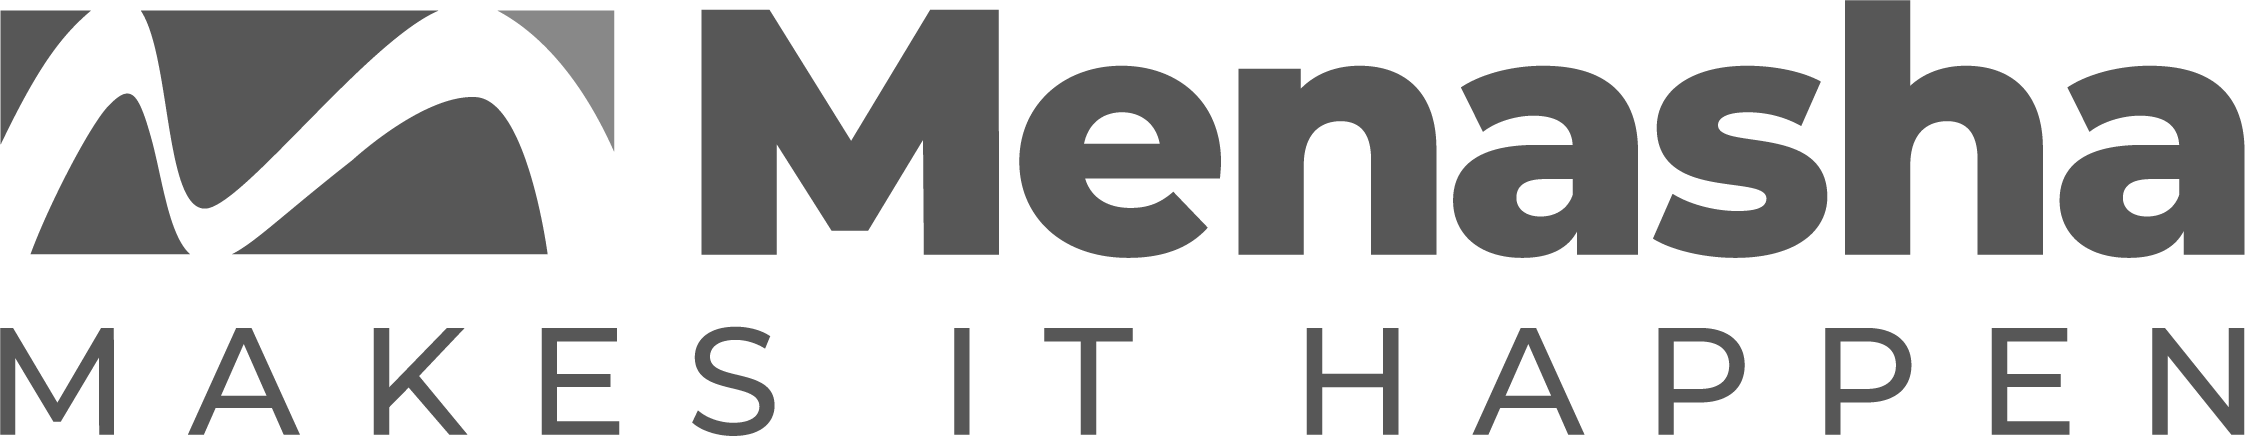 Menasha-LogoBW